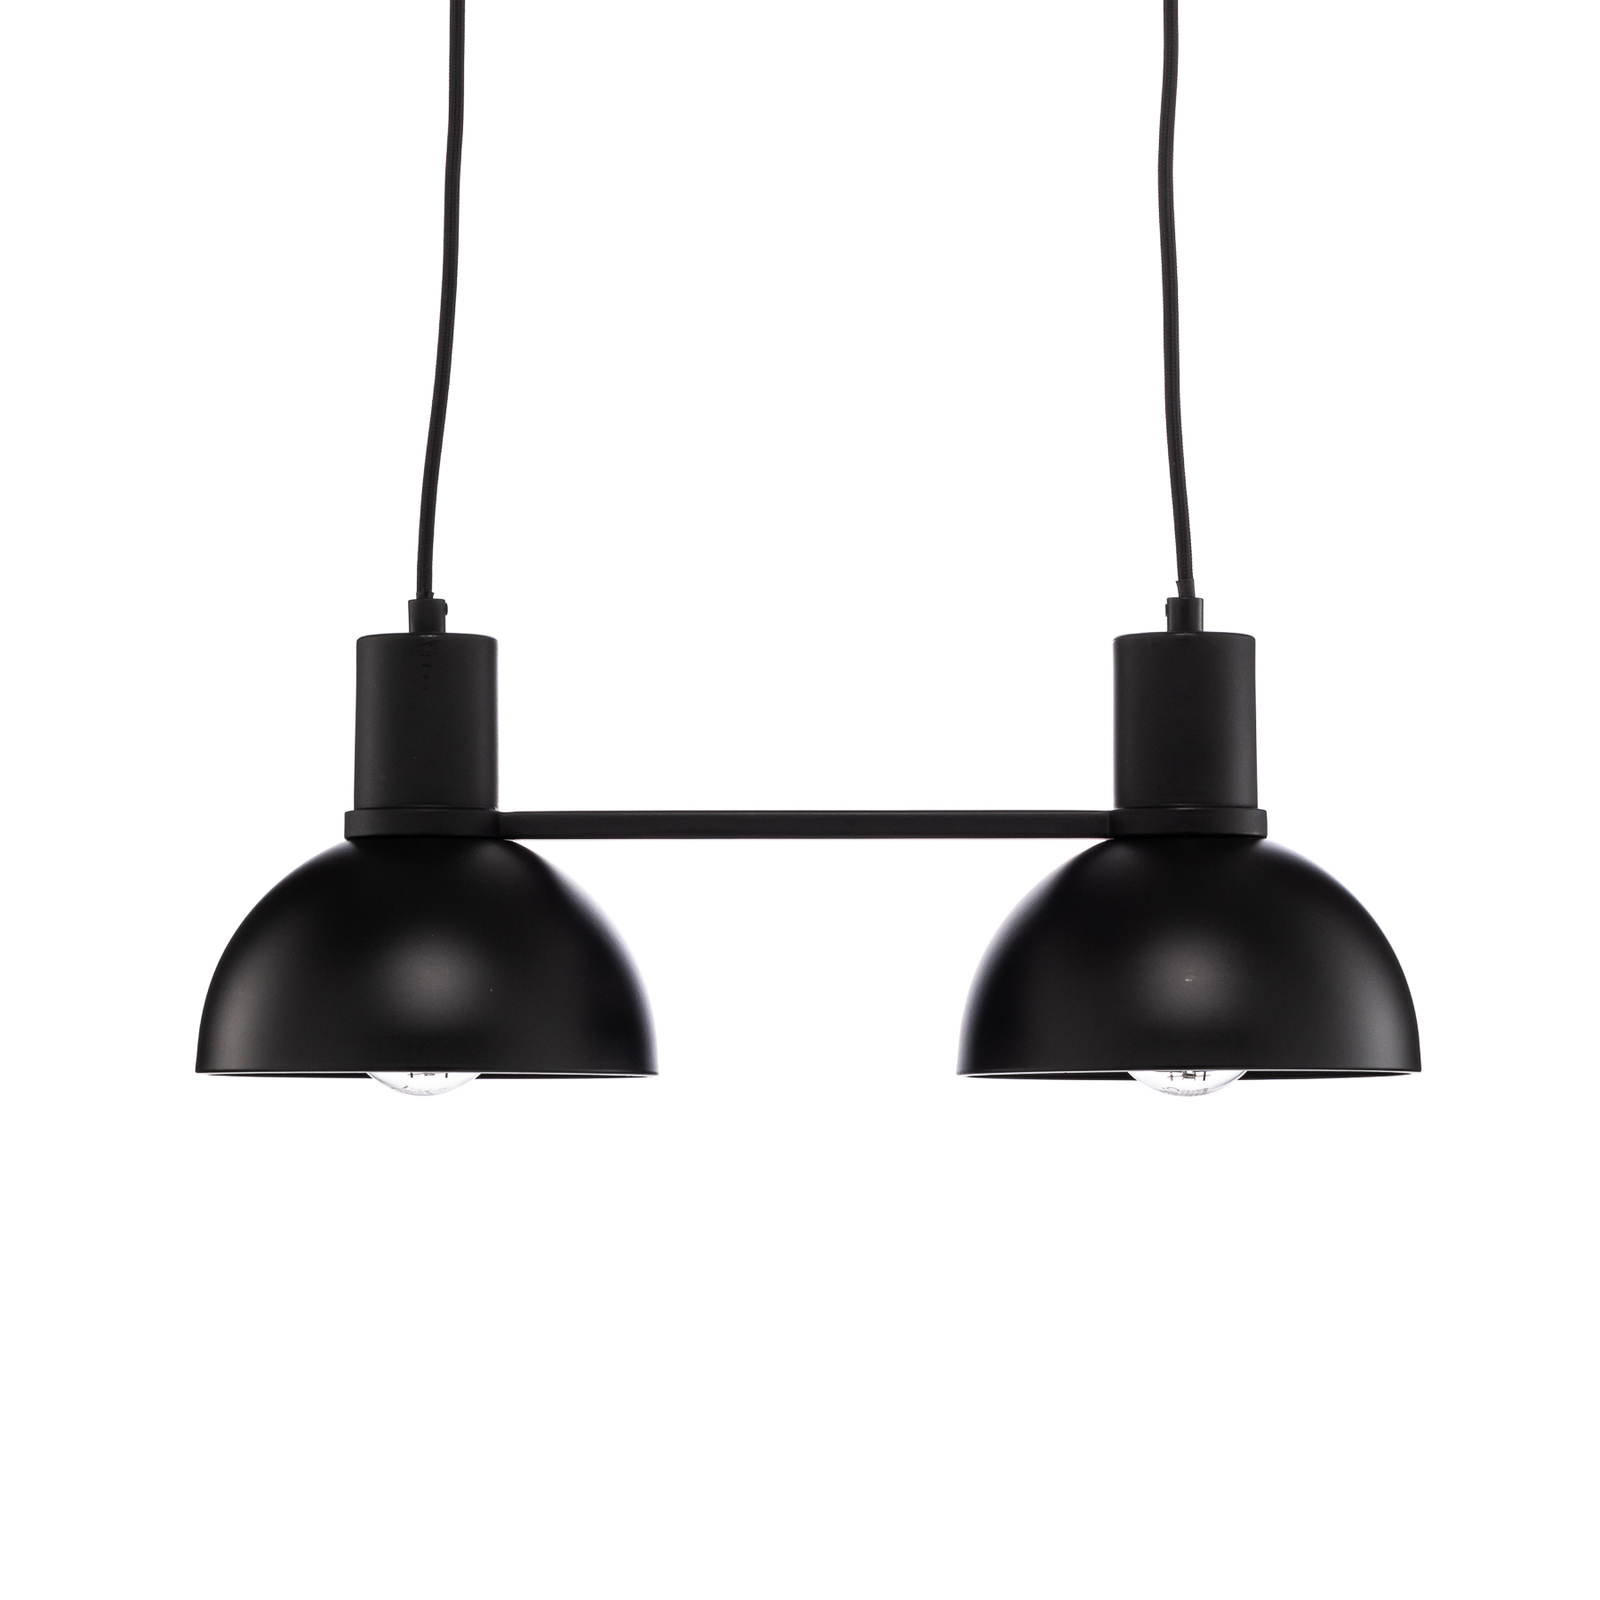 Lucande Mostrid hanging light, black, 2-bulb